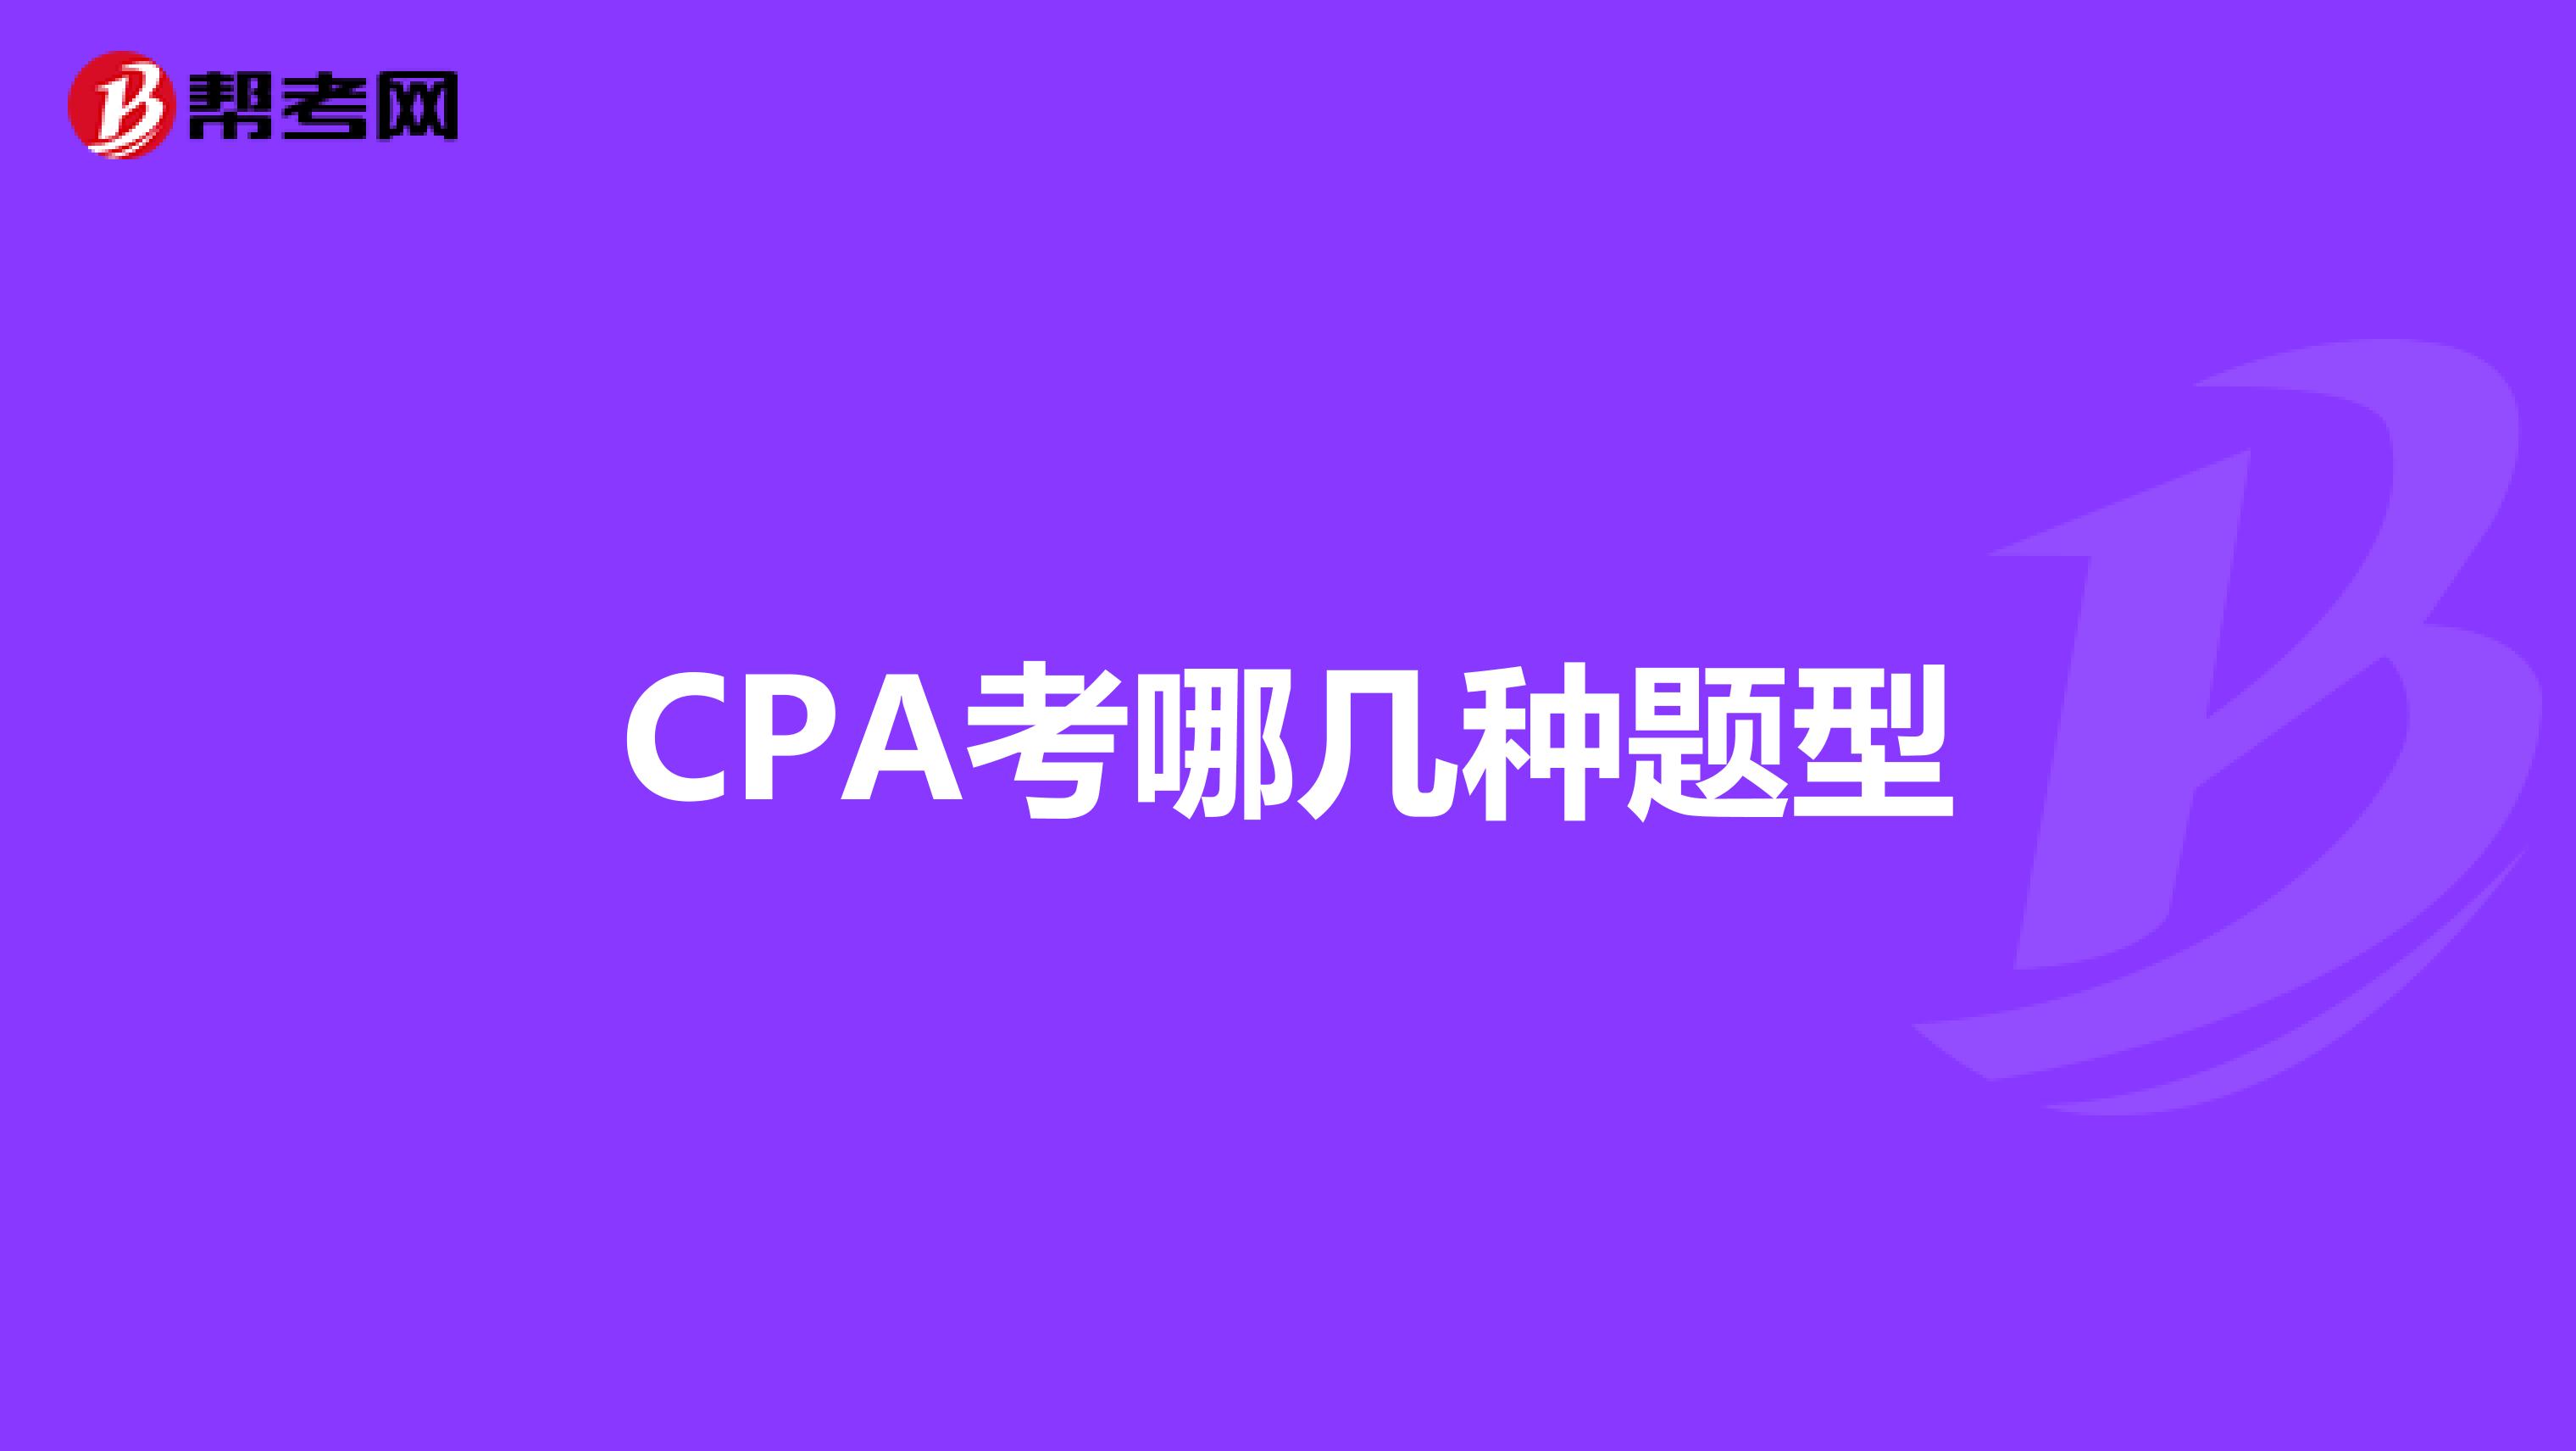 CPA考哪几种题型